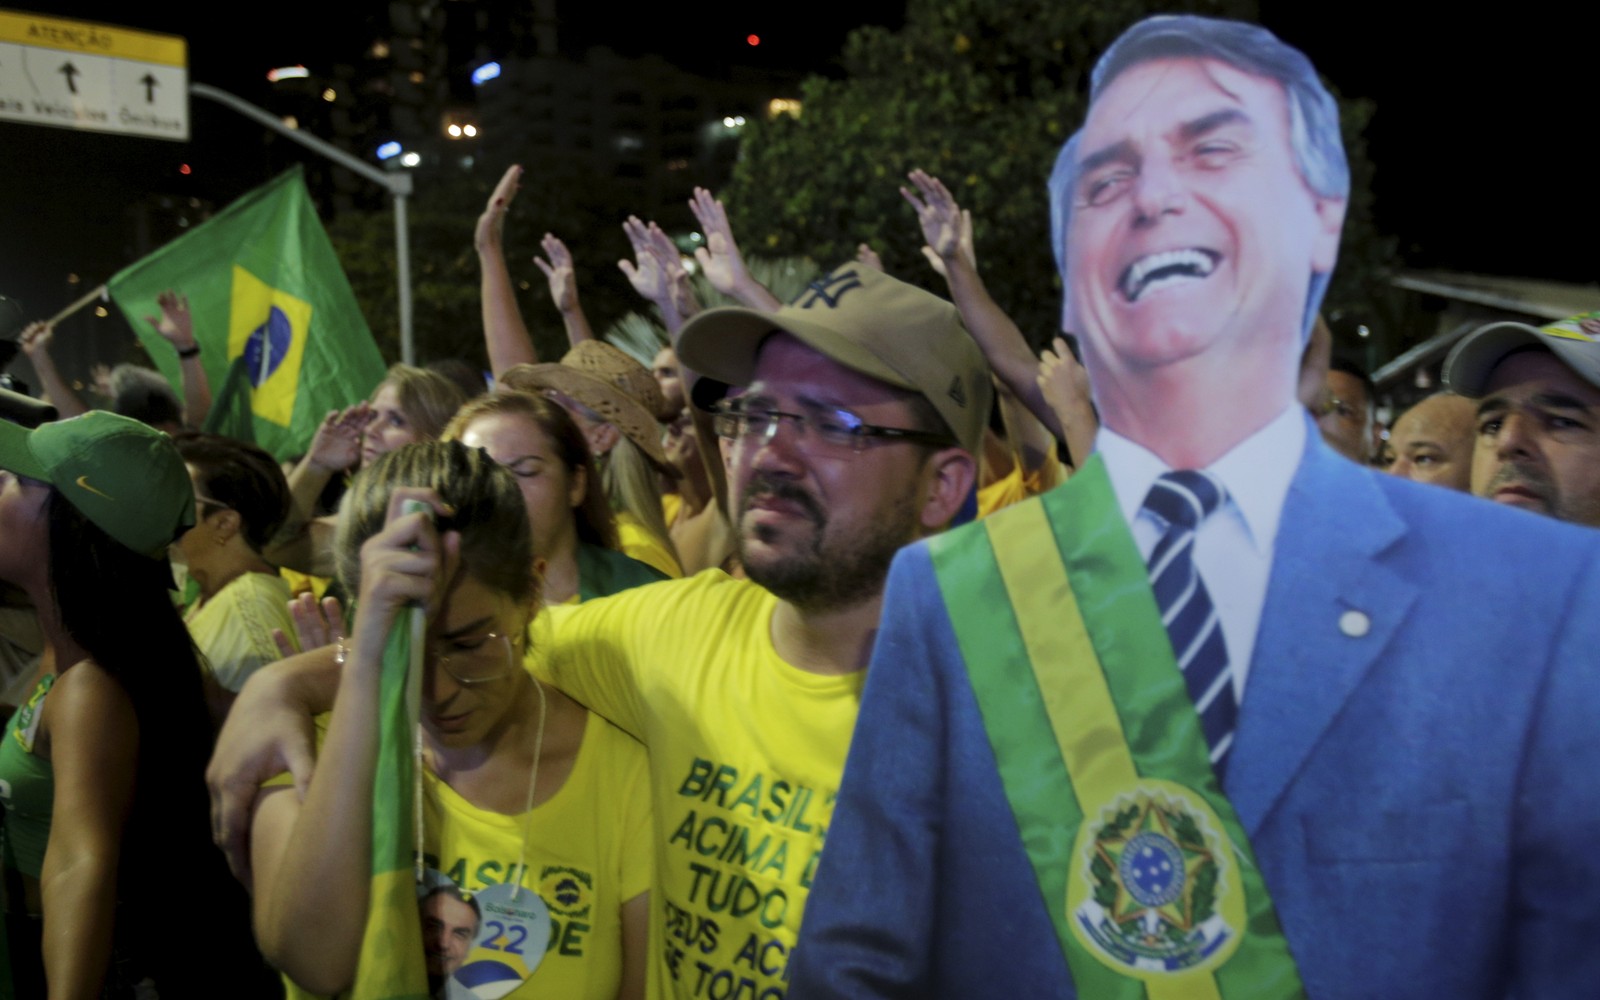 Bolsonarista chora em reunião em frente à casa do presidente Jair Bolsonaro derrotado nas urnas — Foto: Alexandre Cassiano/Agência O Globo